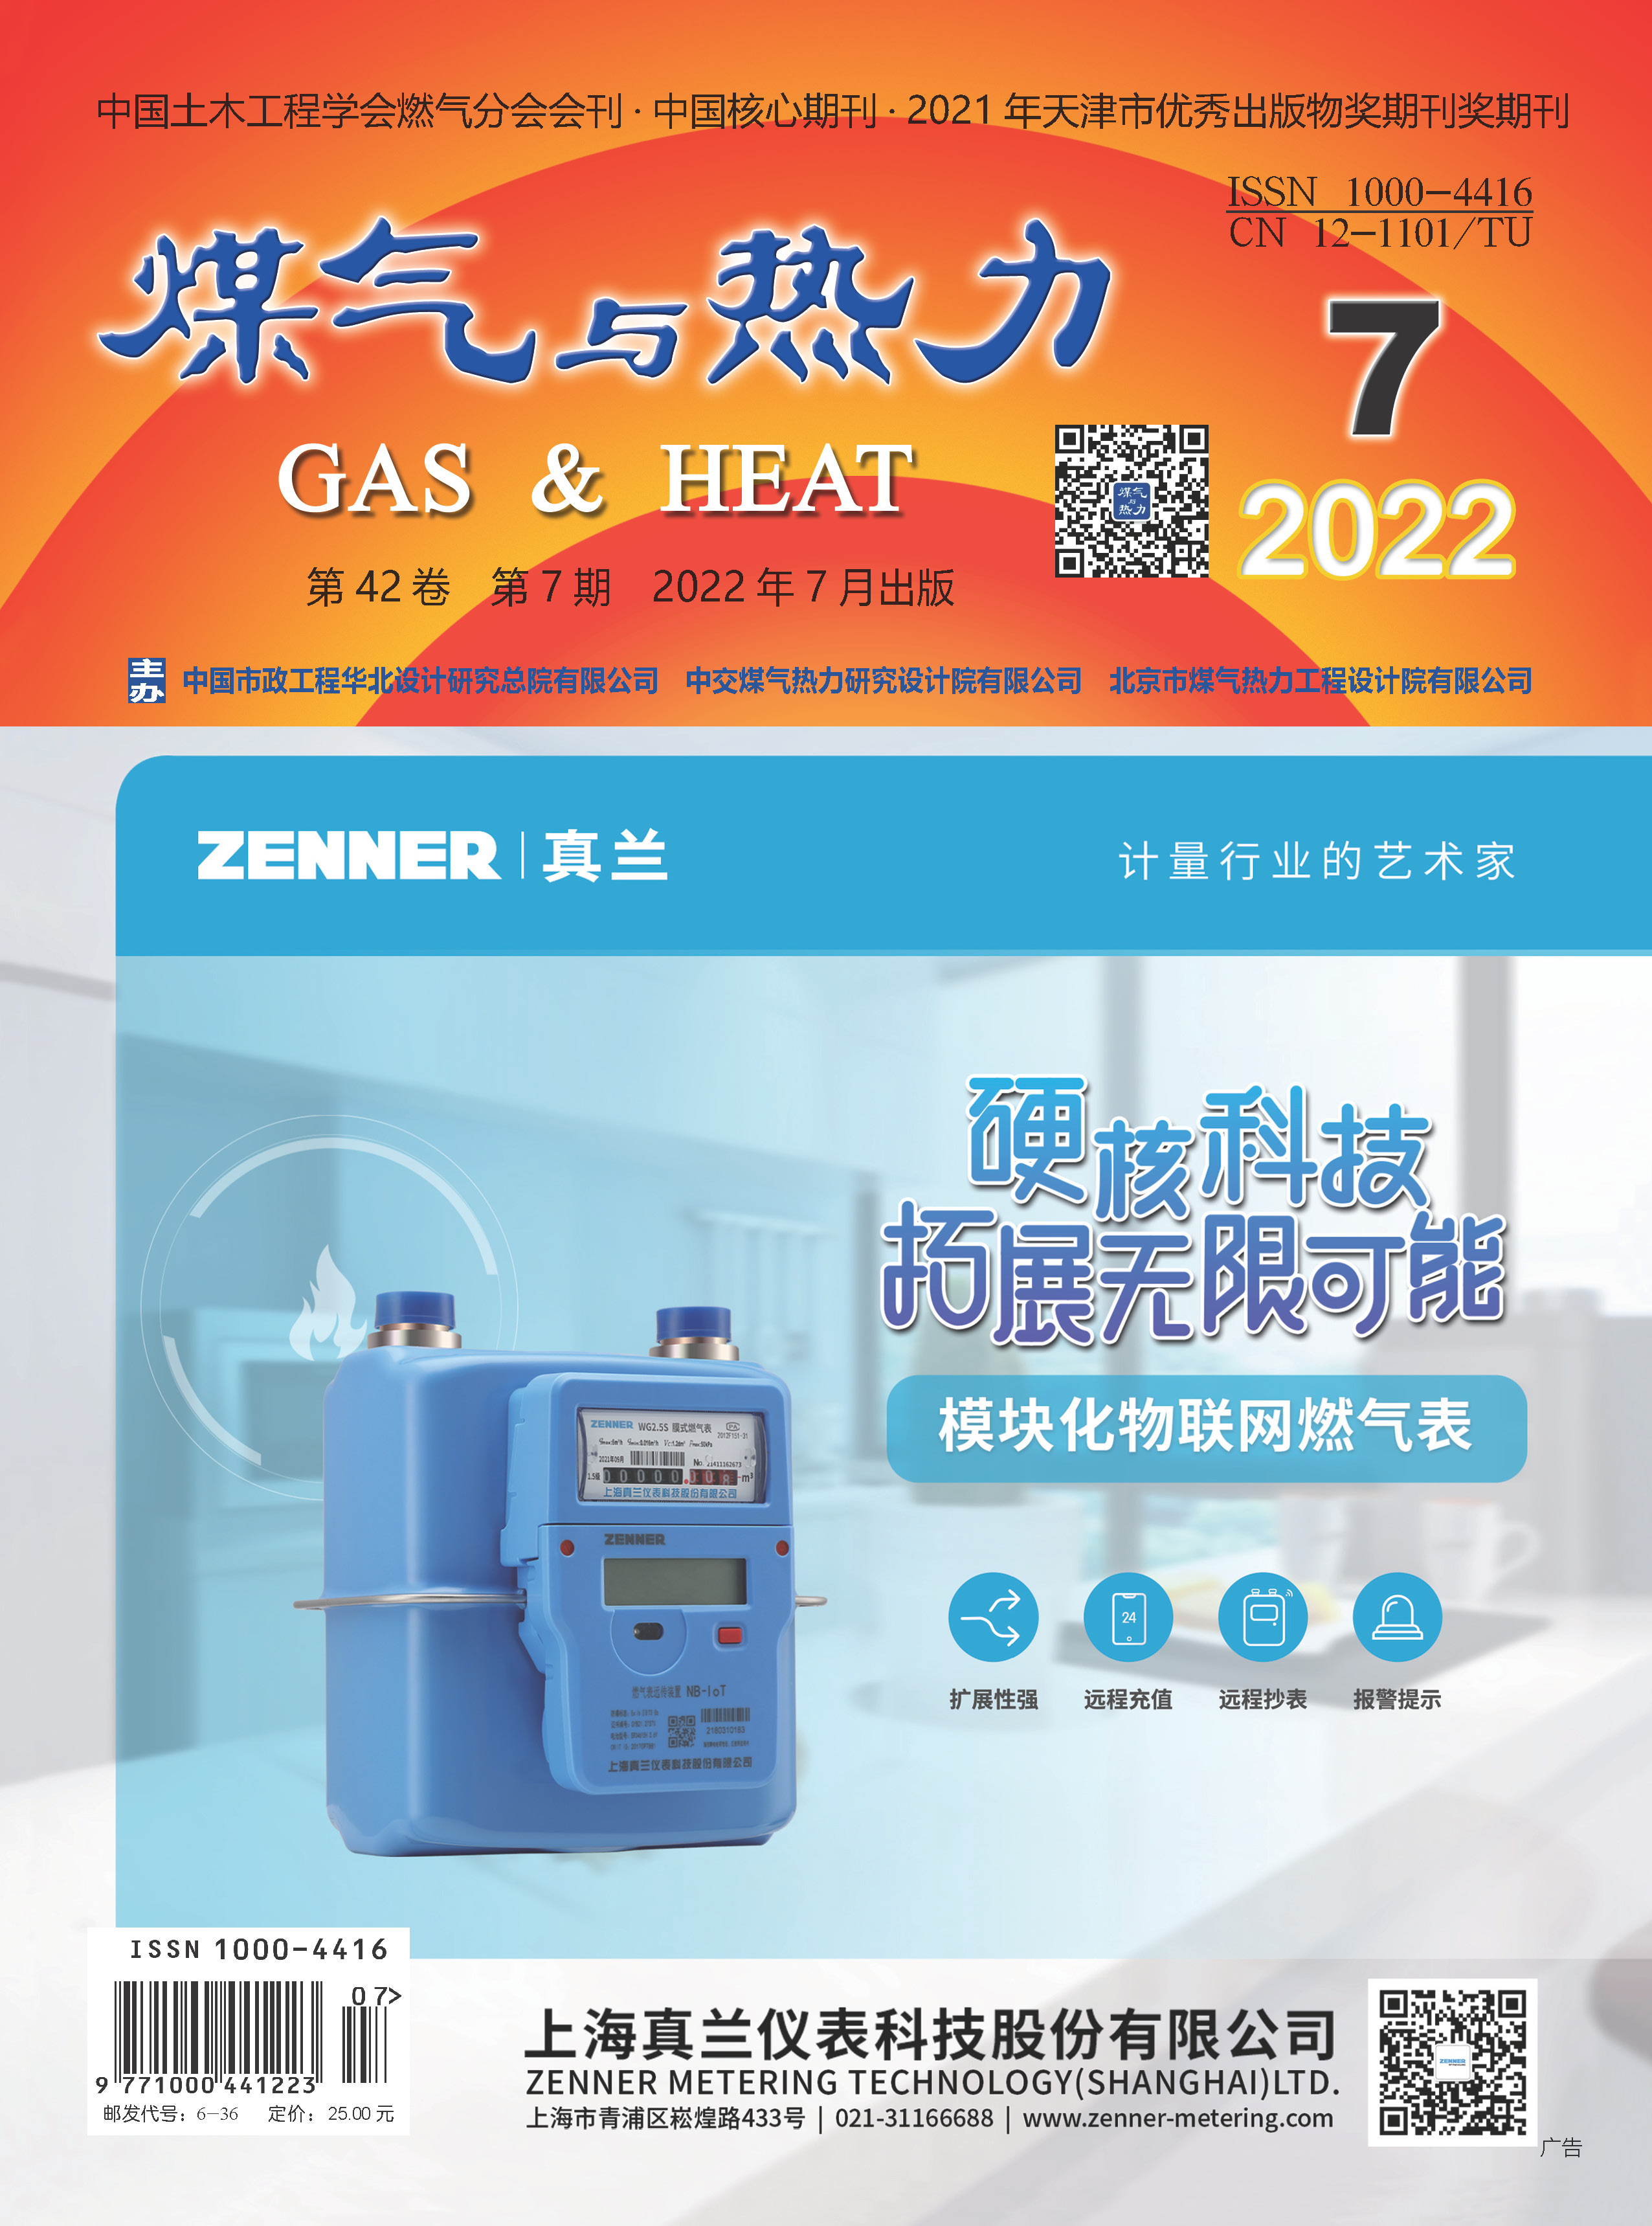 《煤气与热力》2022年第7期